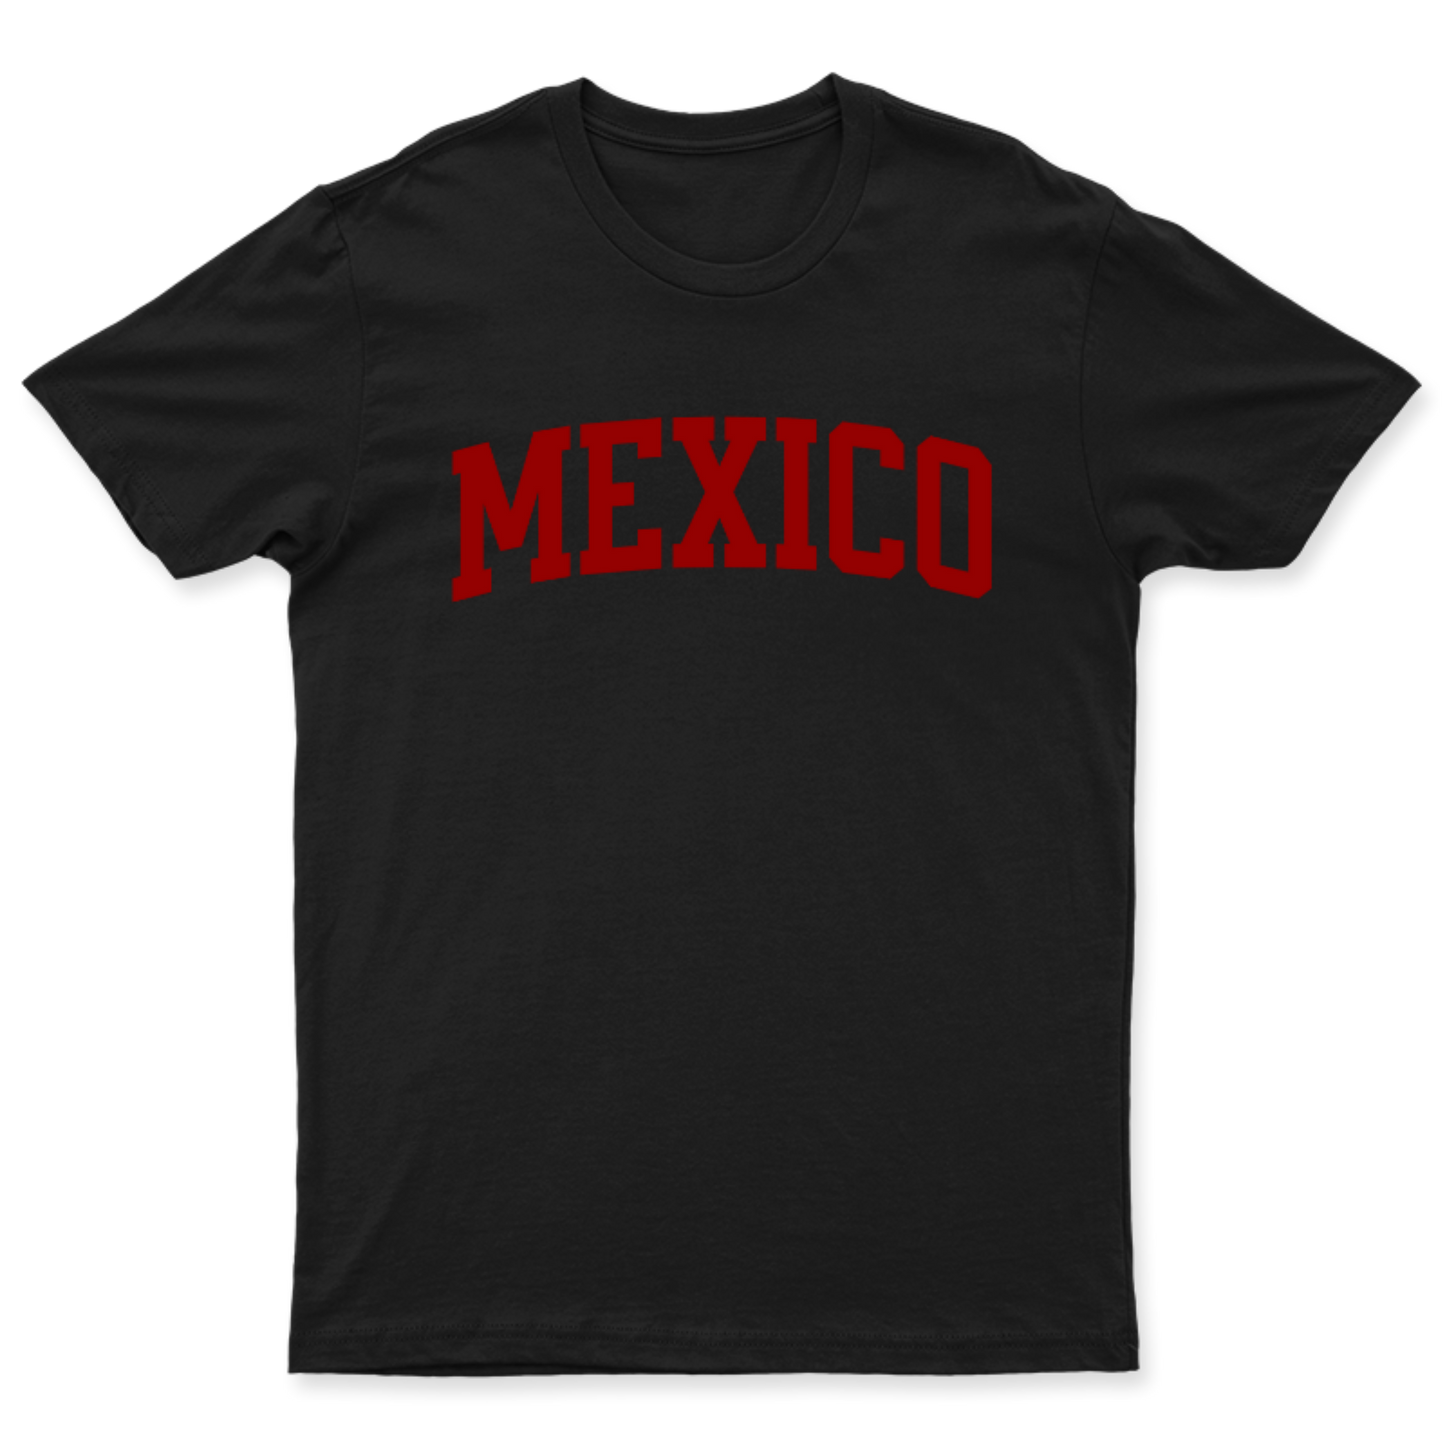 Playera Mexico